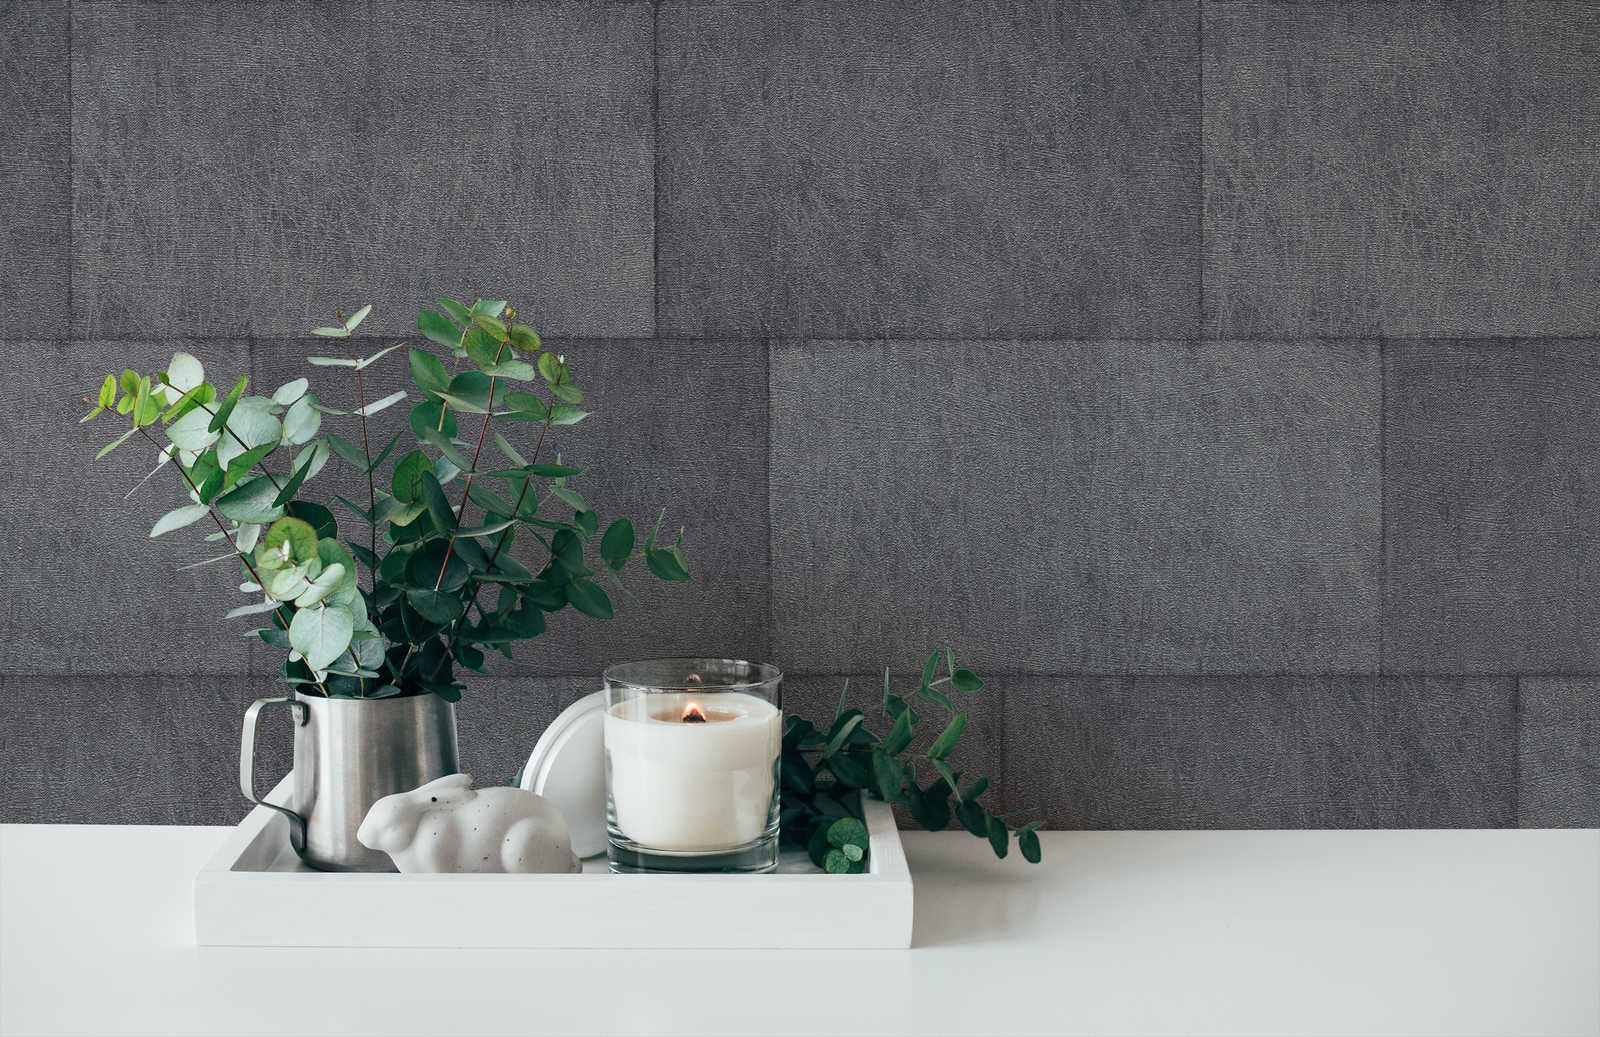             Mauerwerk Tapete mit Struktureffekt, glänzend – Grau, Schwarz
        